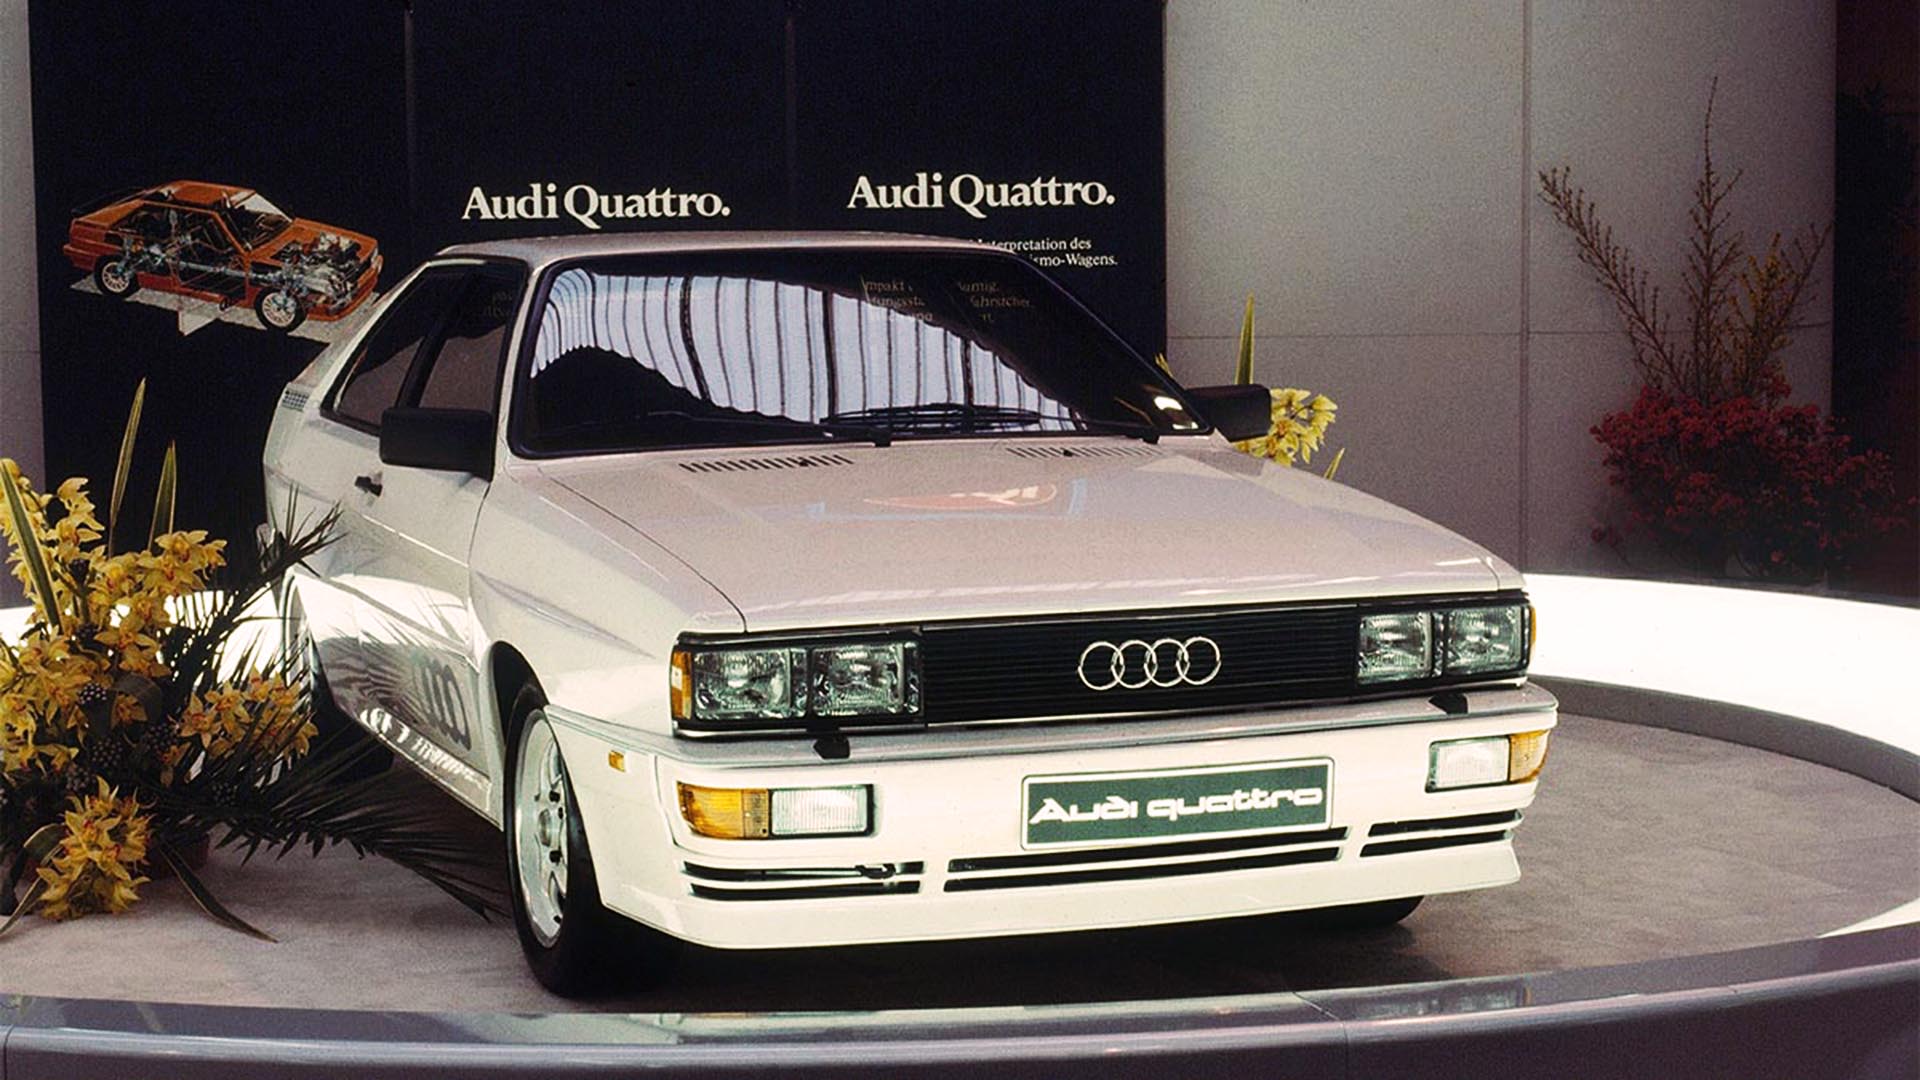 En el Salón de Ginebra de 1980, Audi presentó el Audi Quattro, el primer auto de tracción integral de alta performance del mundo